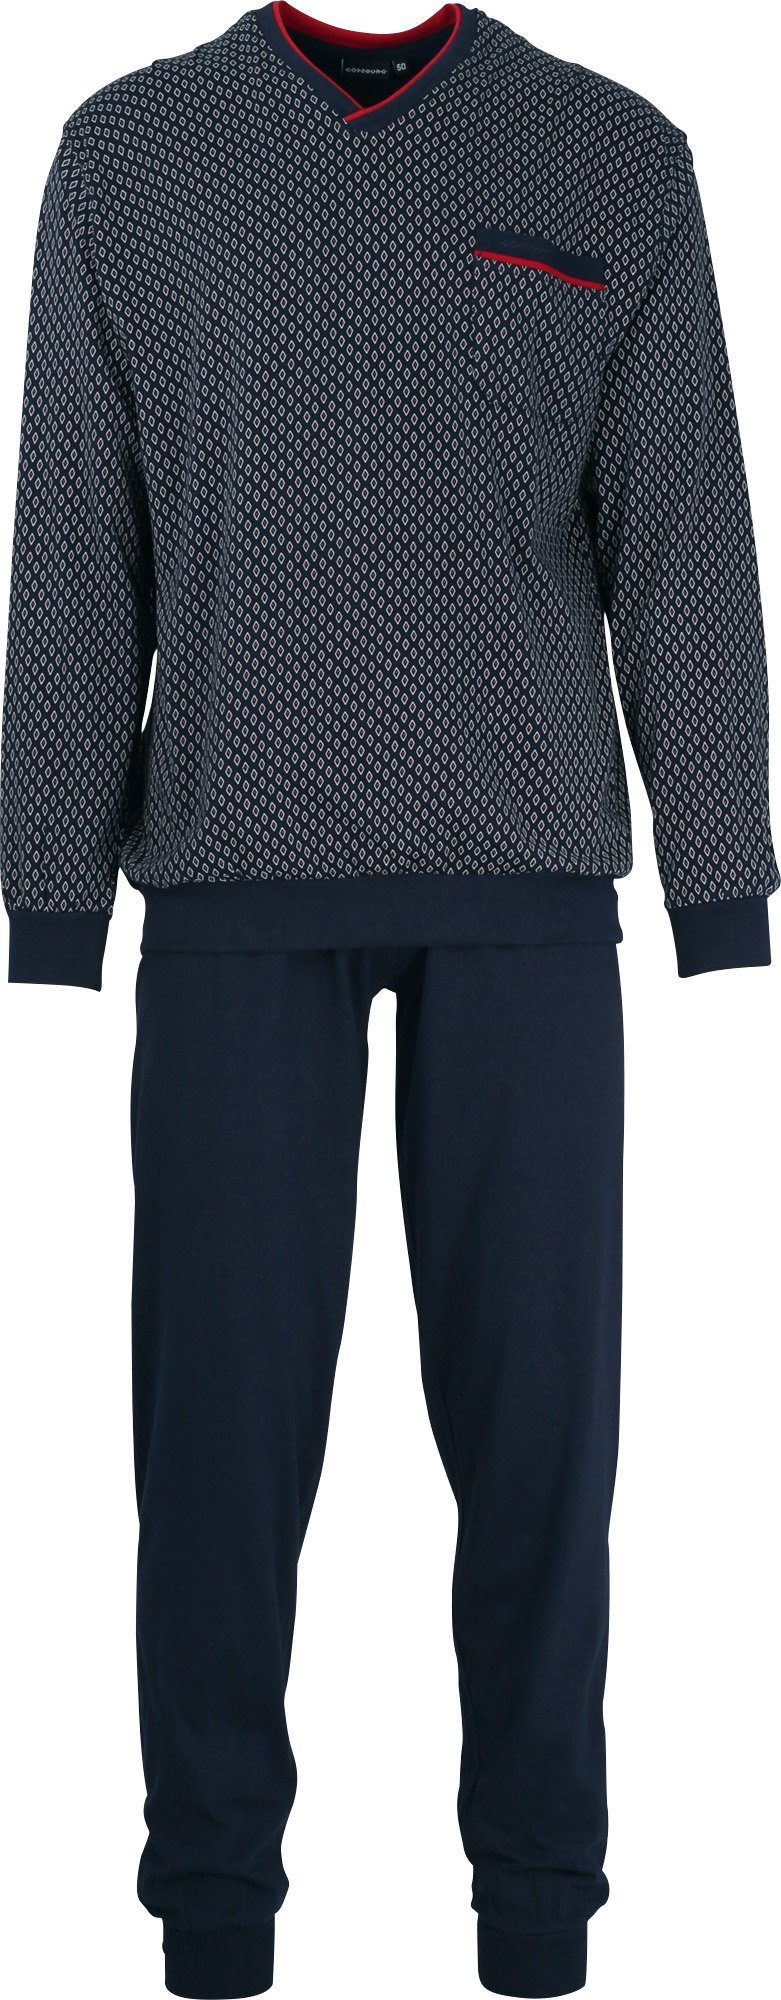 Herren-Schlafanzug navy gemustert GÖTZBURG Pyjama Single-Jersey 7013